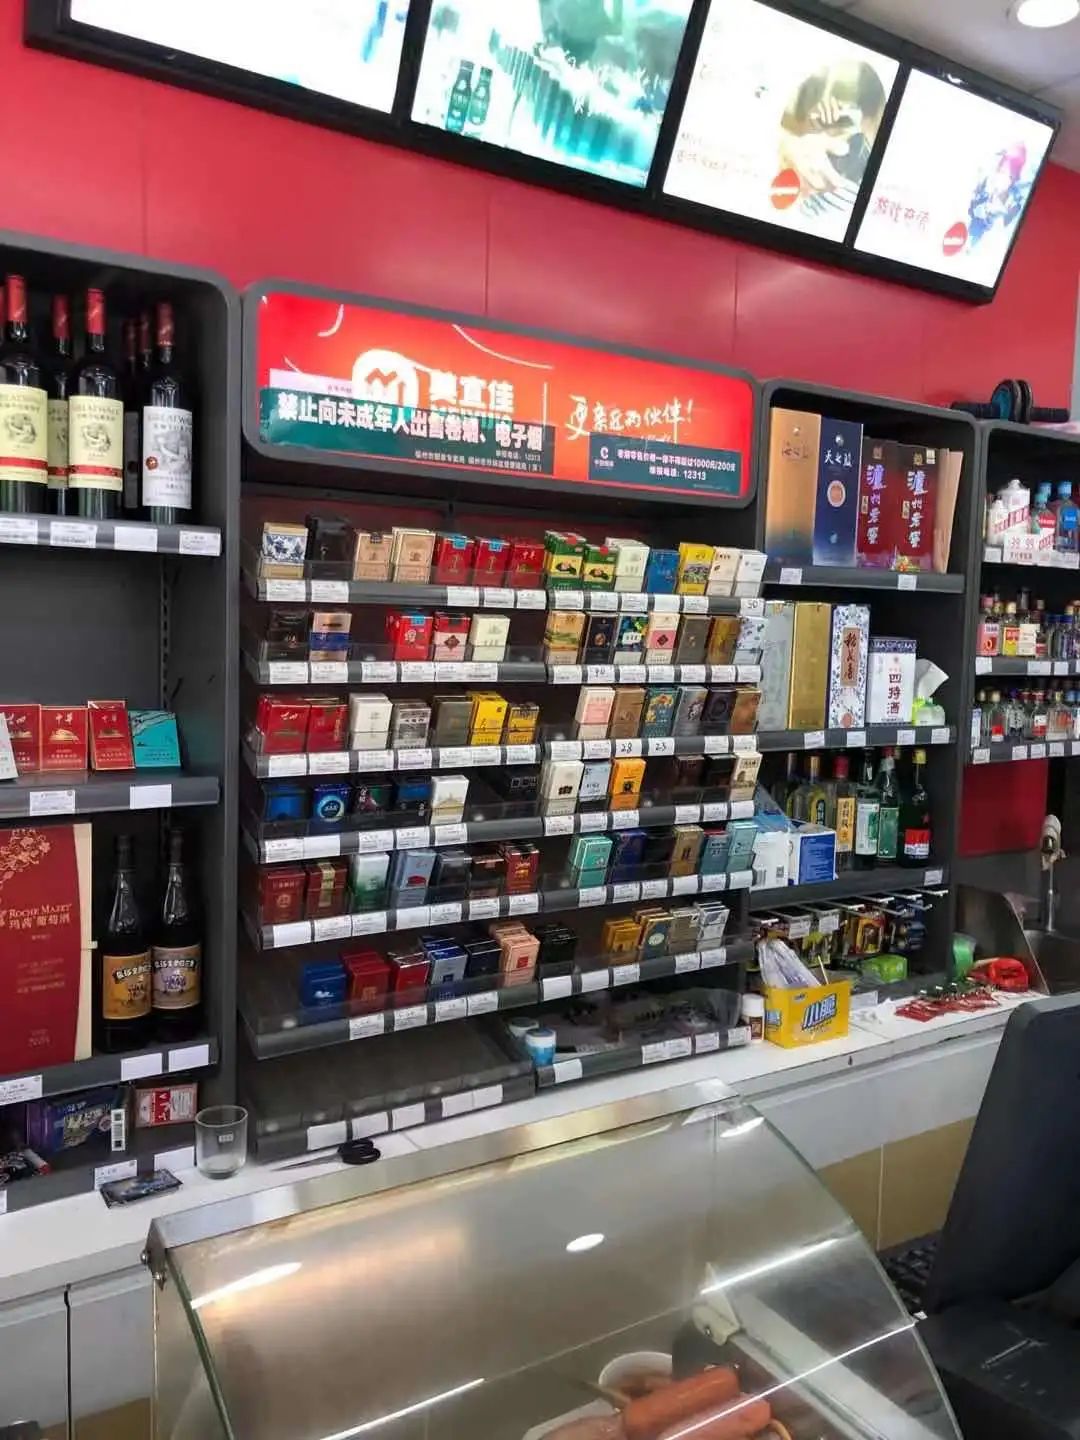 附近超市存在柜面销售烟草制品,柜台下隐藏销售悦刻牌电子烟现象,某